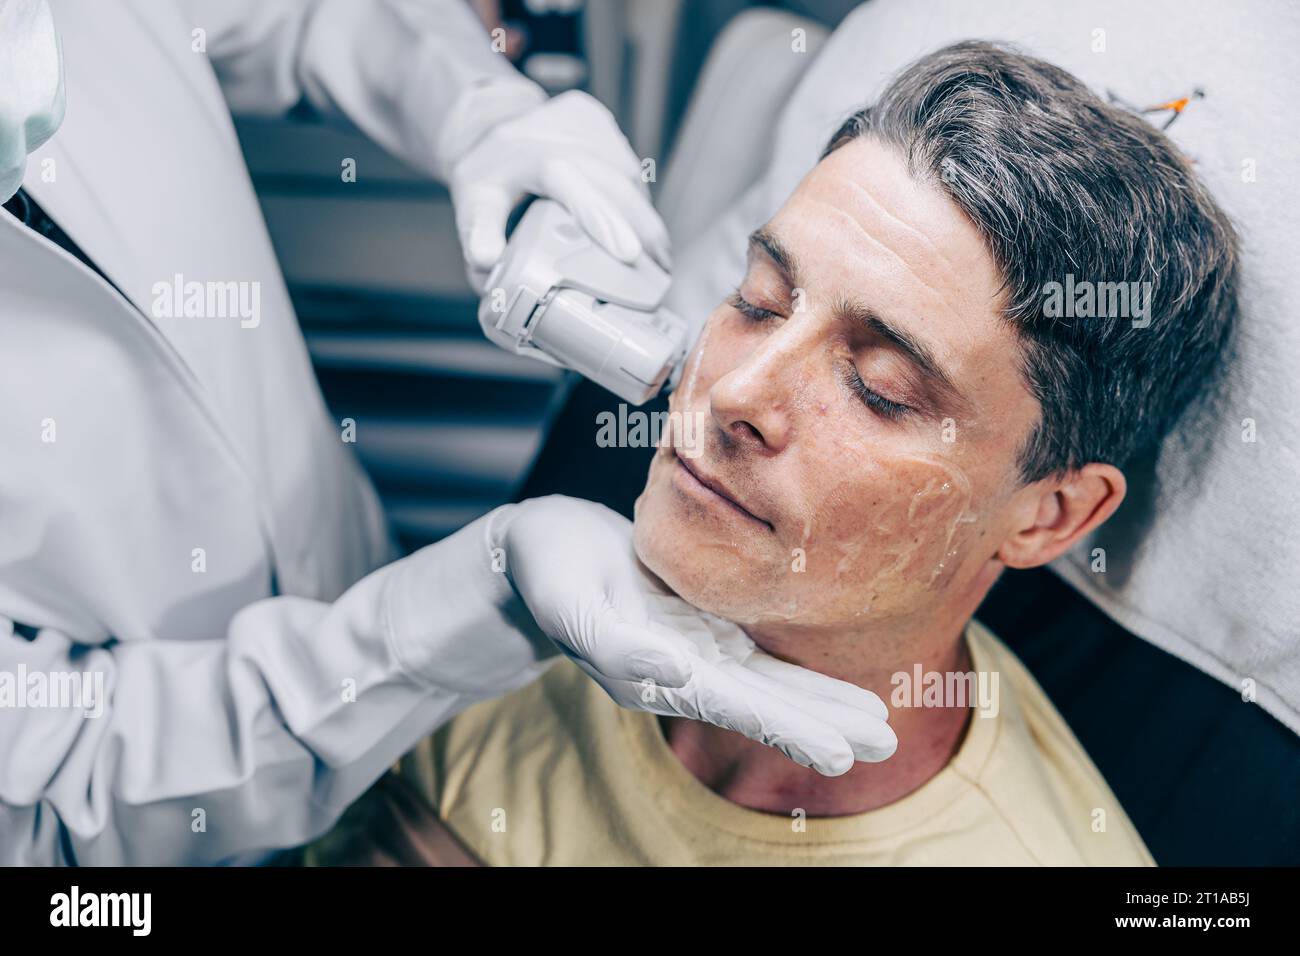 Médecin de la peau utilisant la technologie de traitement de soin du visage de resurfaçage de laser avec homme adulte pour réduire les rides et les cicatrices à la clinique anti-vieillissement Banque D'Images